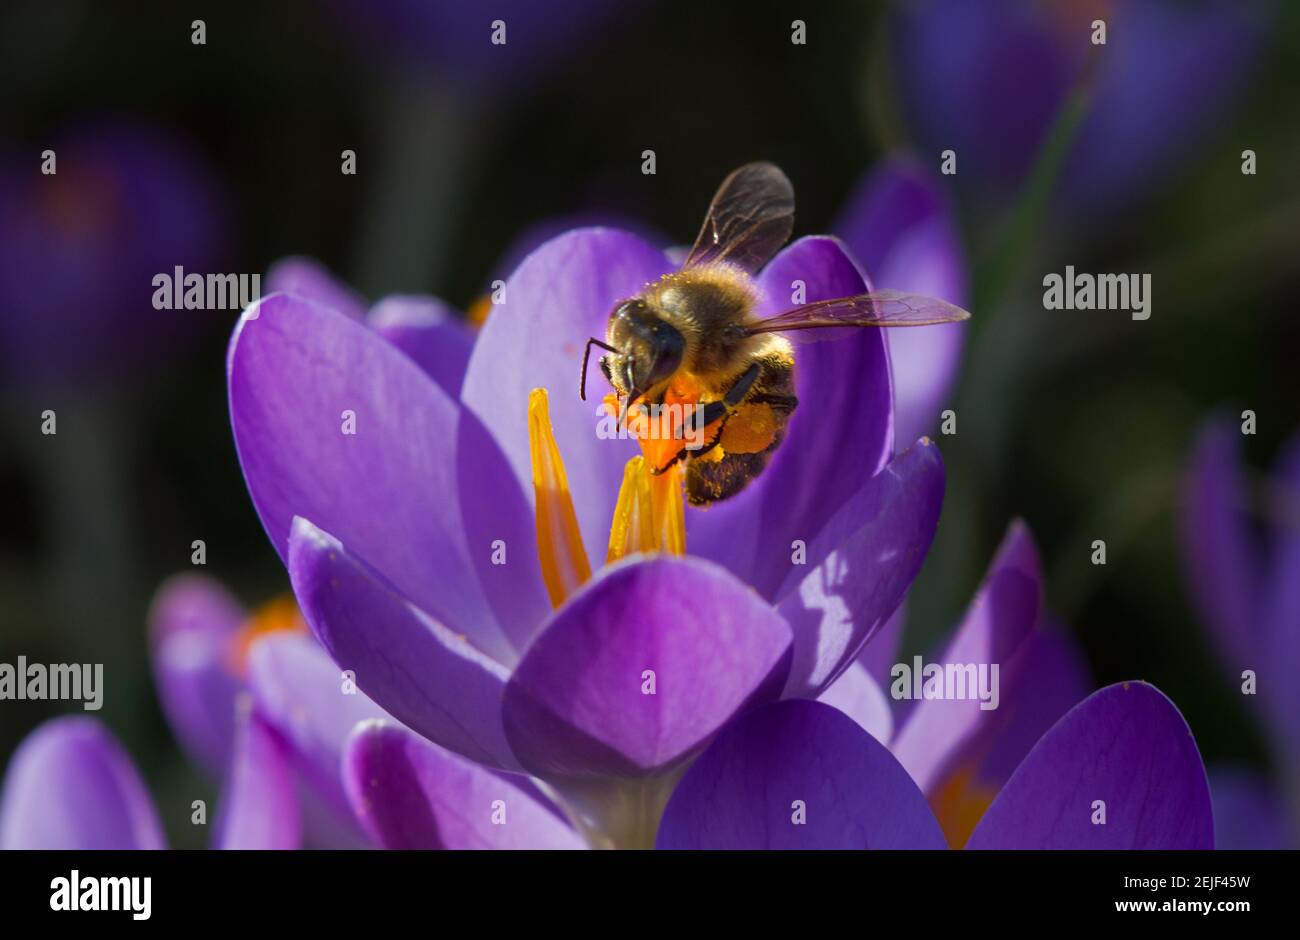 Bestäubung: Honigbiene auf violetten Krokus mit safranfarbenen Staubgefäßen Stockfoto